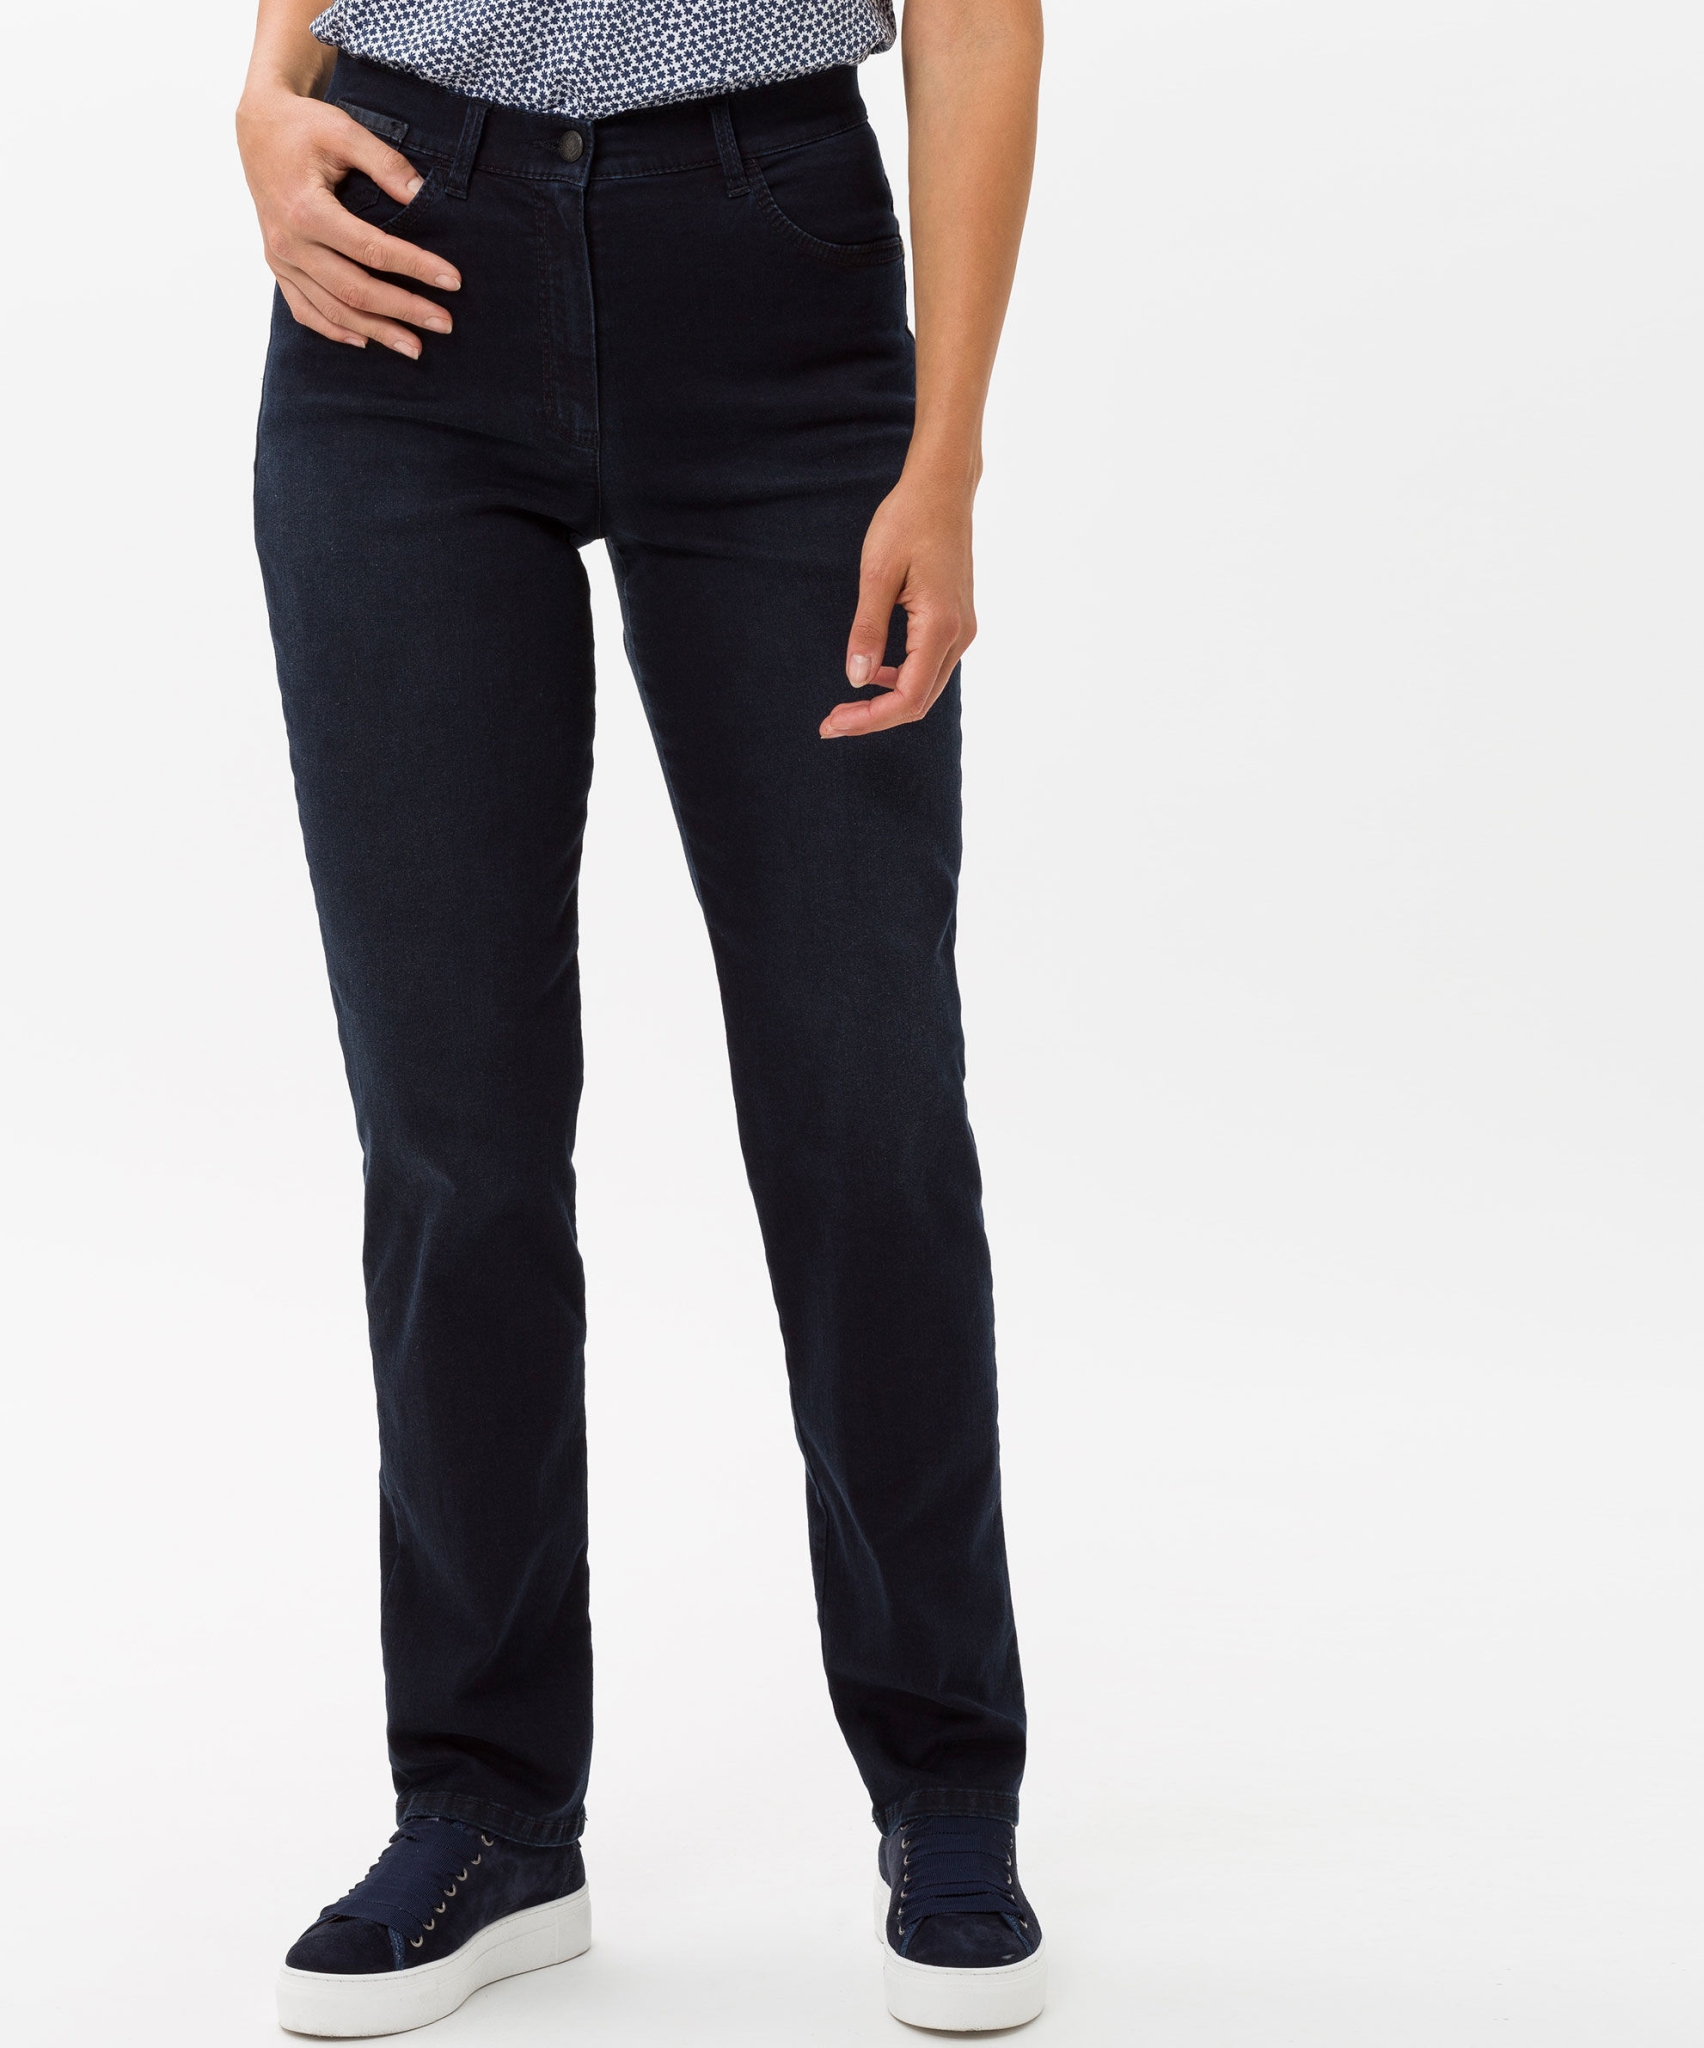 RAPHAELA BY BRAX Jeans in hochelastischer Dynamic-Qualität 10626977